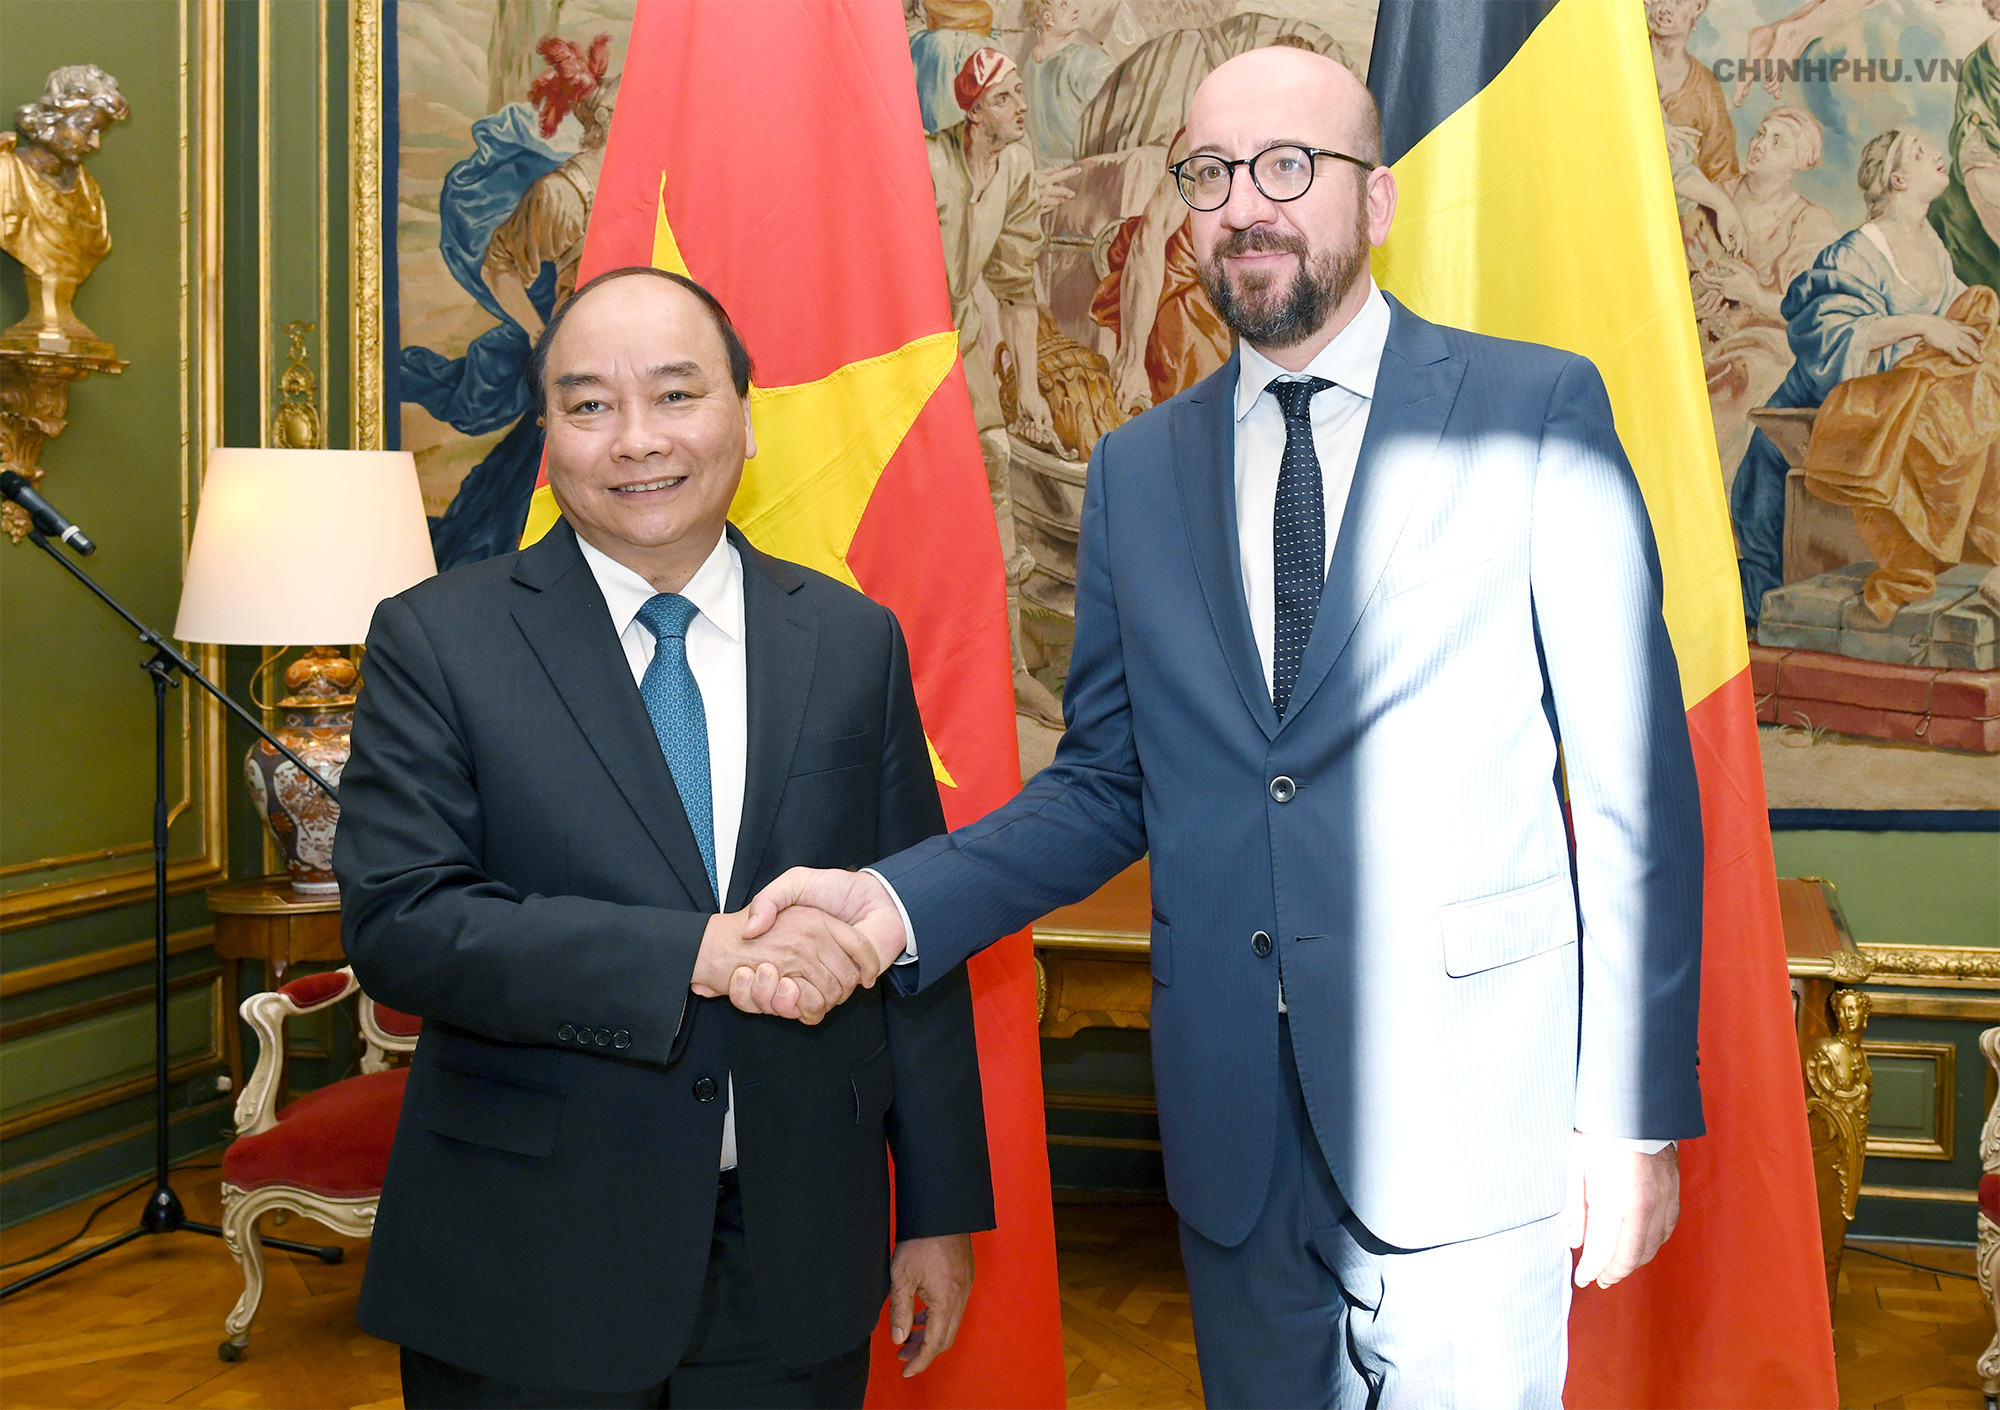 Thủ tướng Bỉ: Thủ tướng Bỉ là một nhân vật quan trọng trong việc thúc đẩy hợp tác giữa Bỉ và Việt Nam. Hãy xem bức ảnh liên quan để tìm hiểu thêm về hành trình của Thủ tướng Bỉ tại Việt Nam và những cam kết hợp tác với chính phủ Việt Nam.